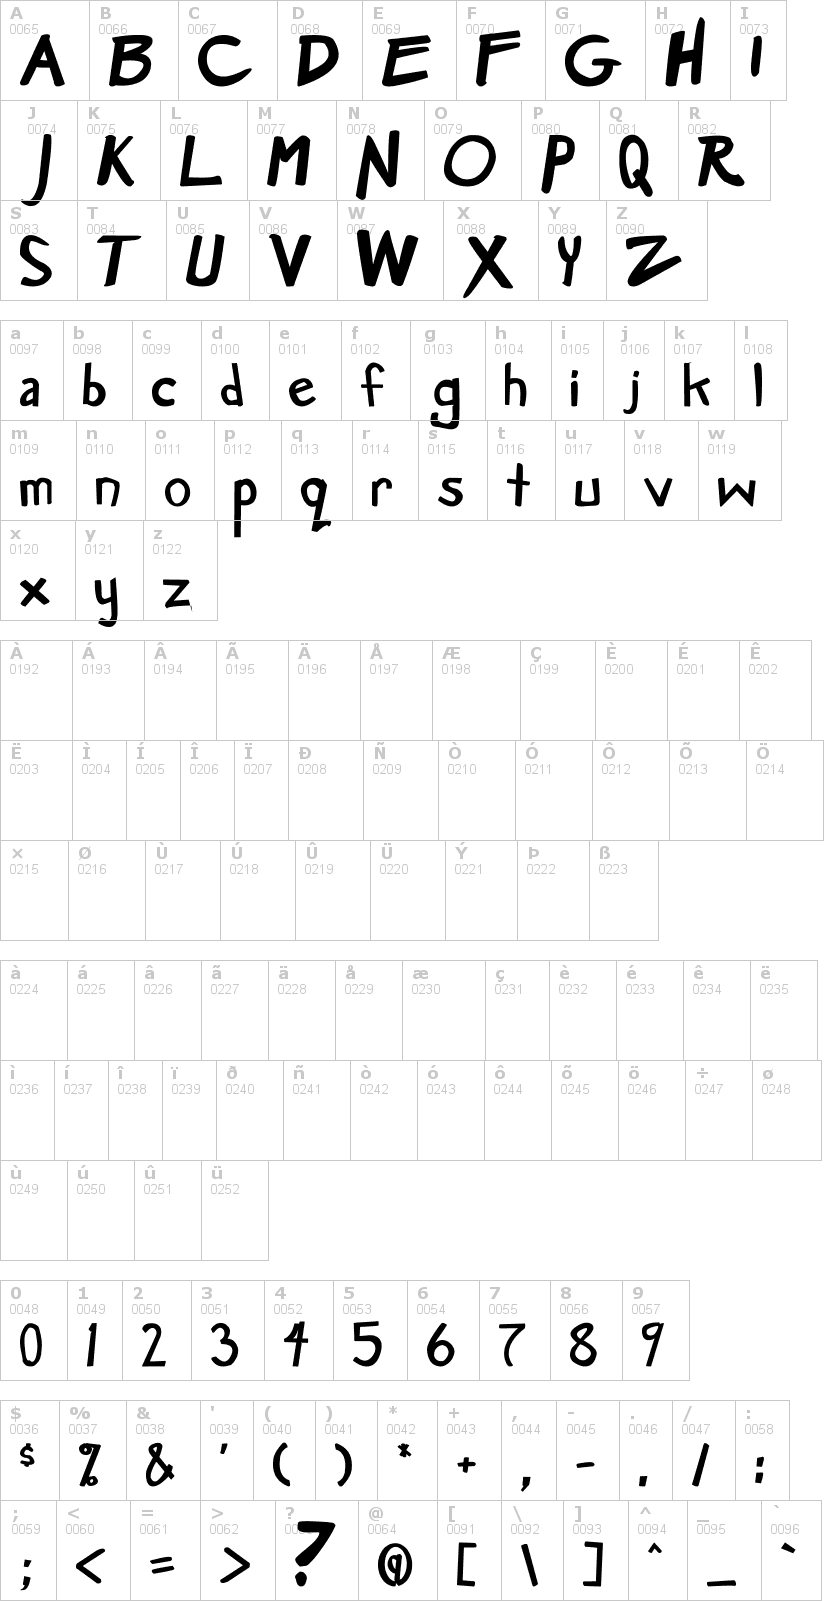 Lettere dell'alfabeto del font manga-speak con le quali è possibile realizzare adesivi prespaziati